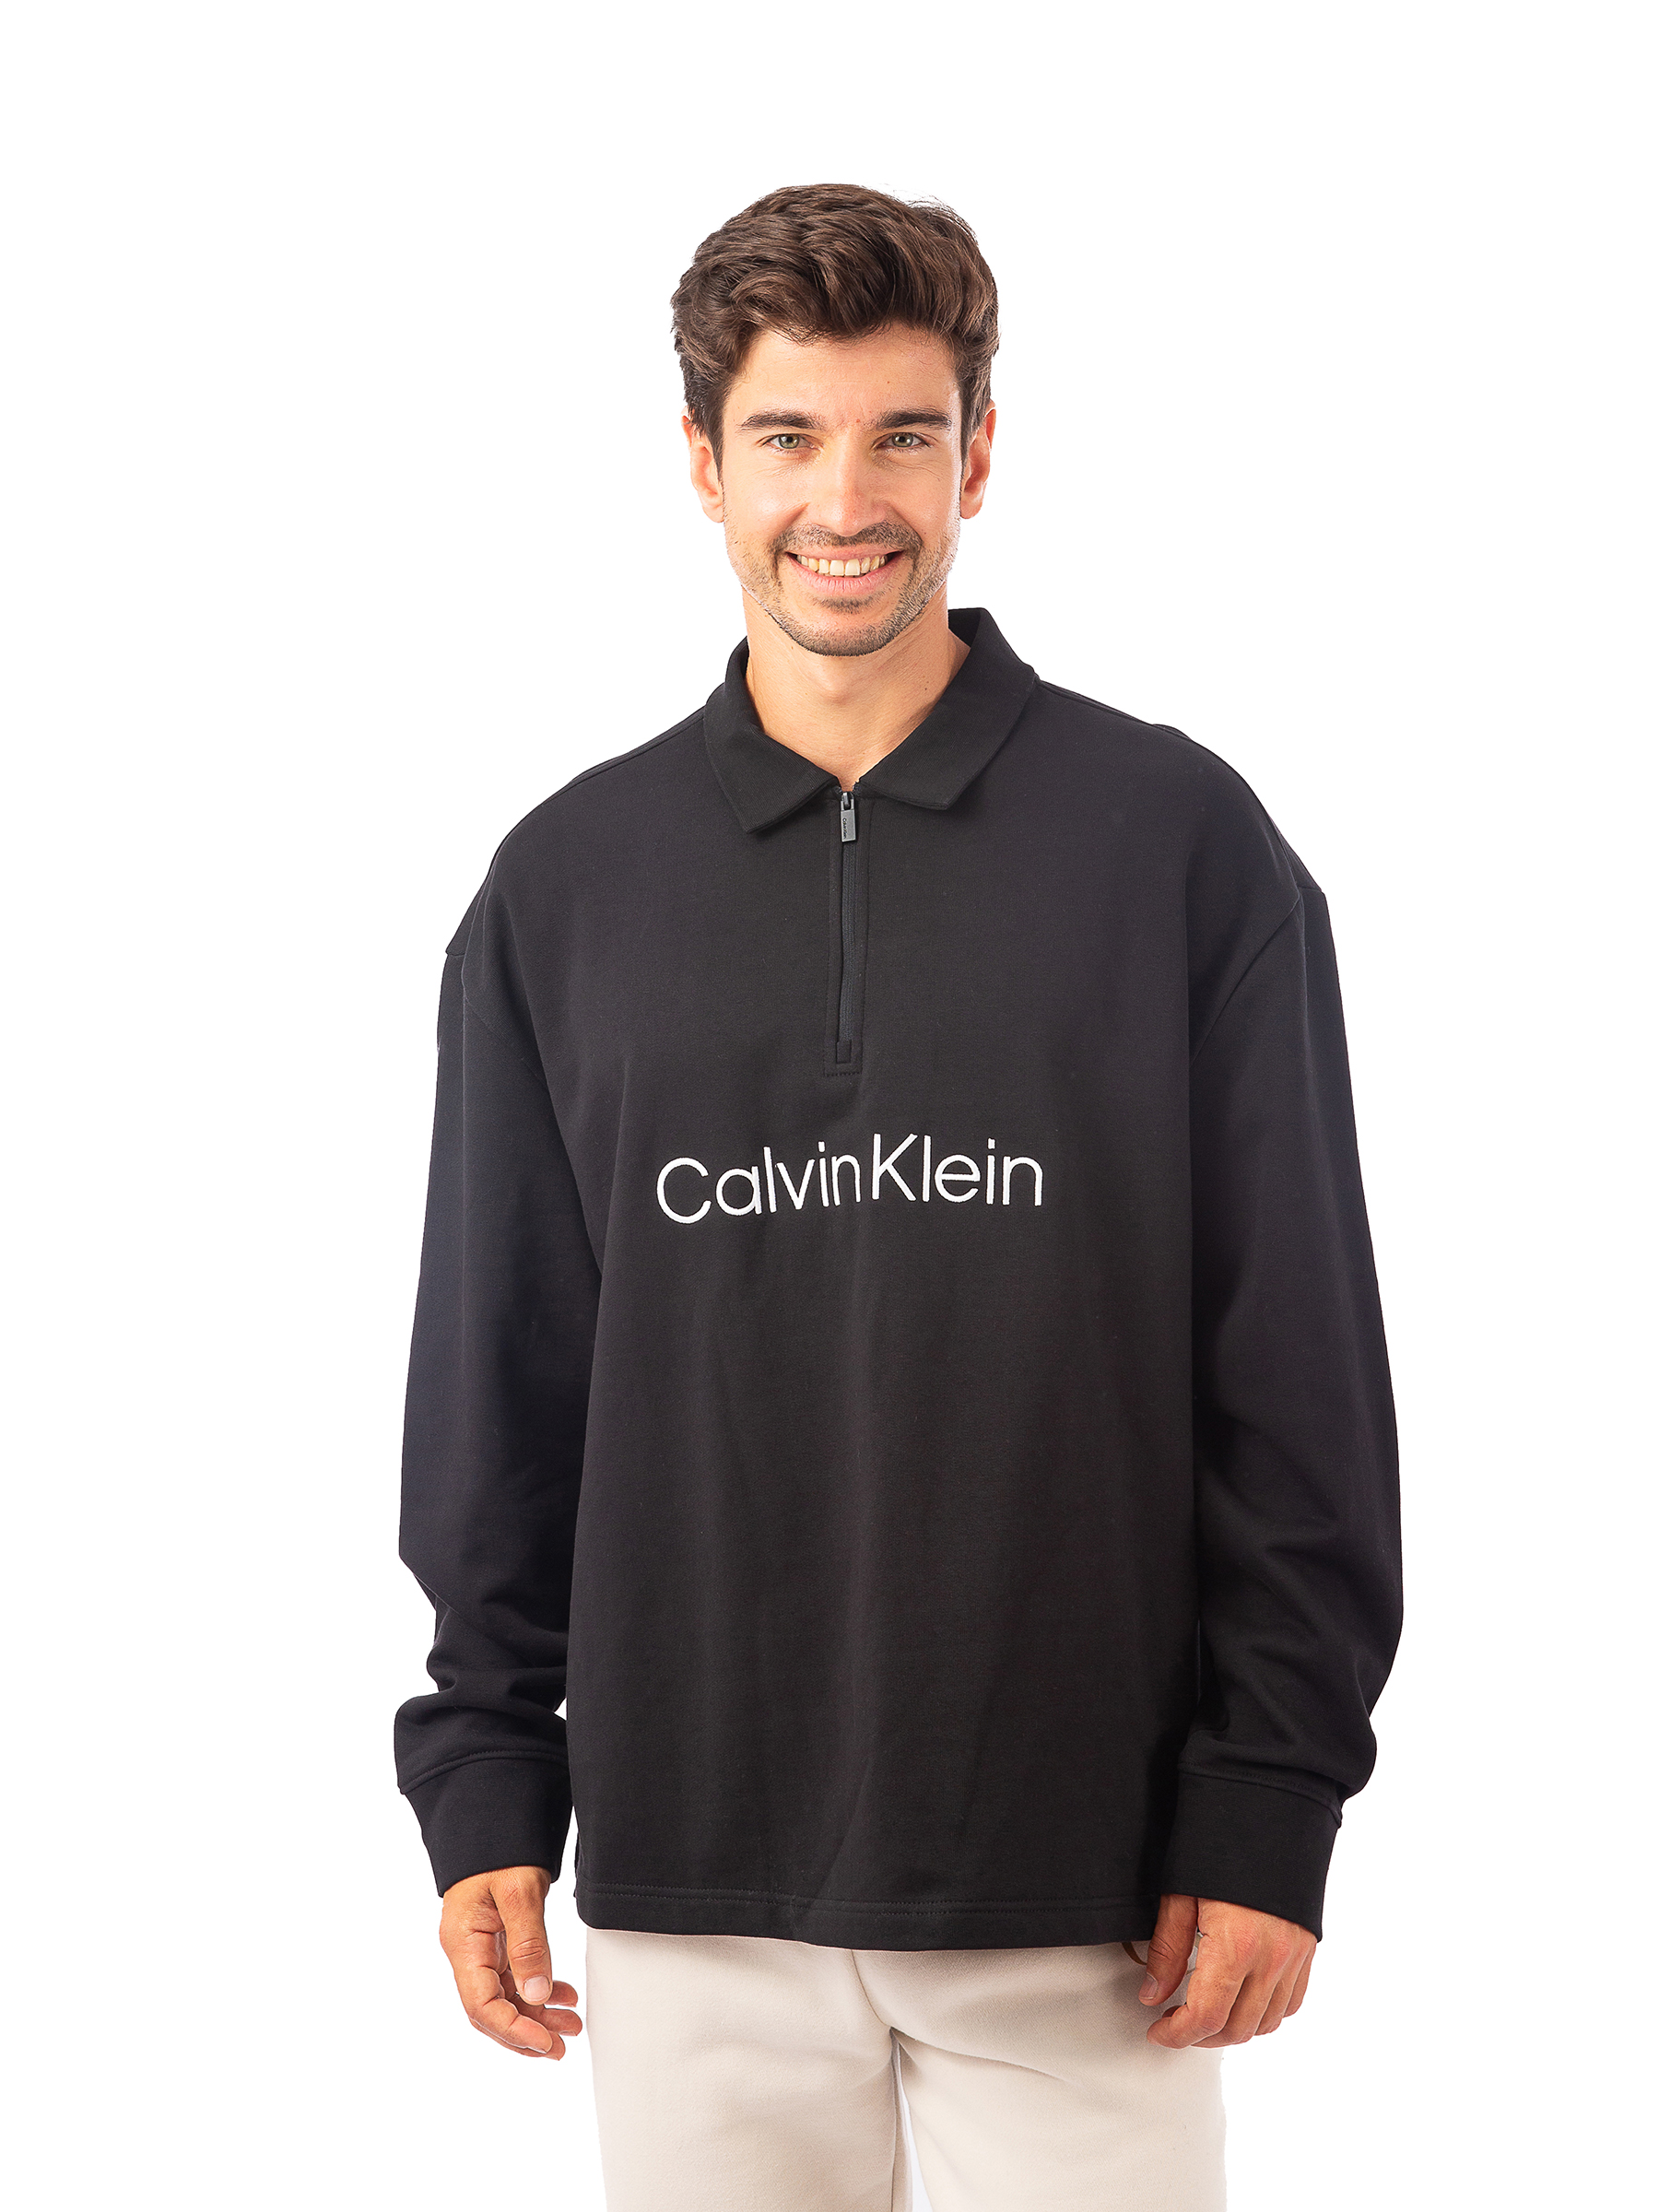 Свитшот мужской Calvin Klein 40HM250 черный L